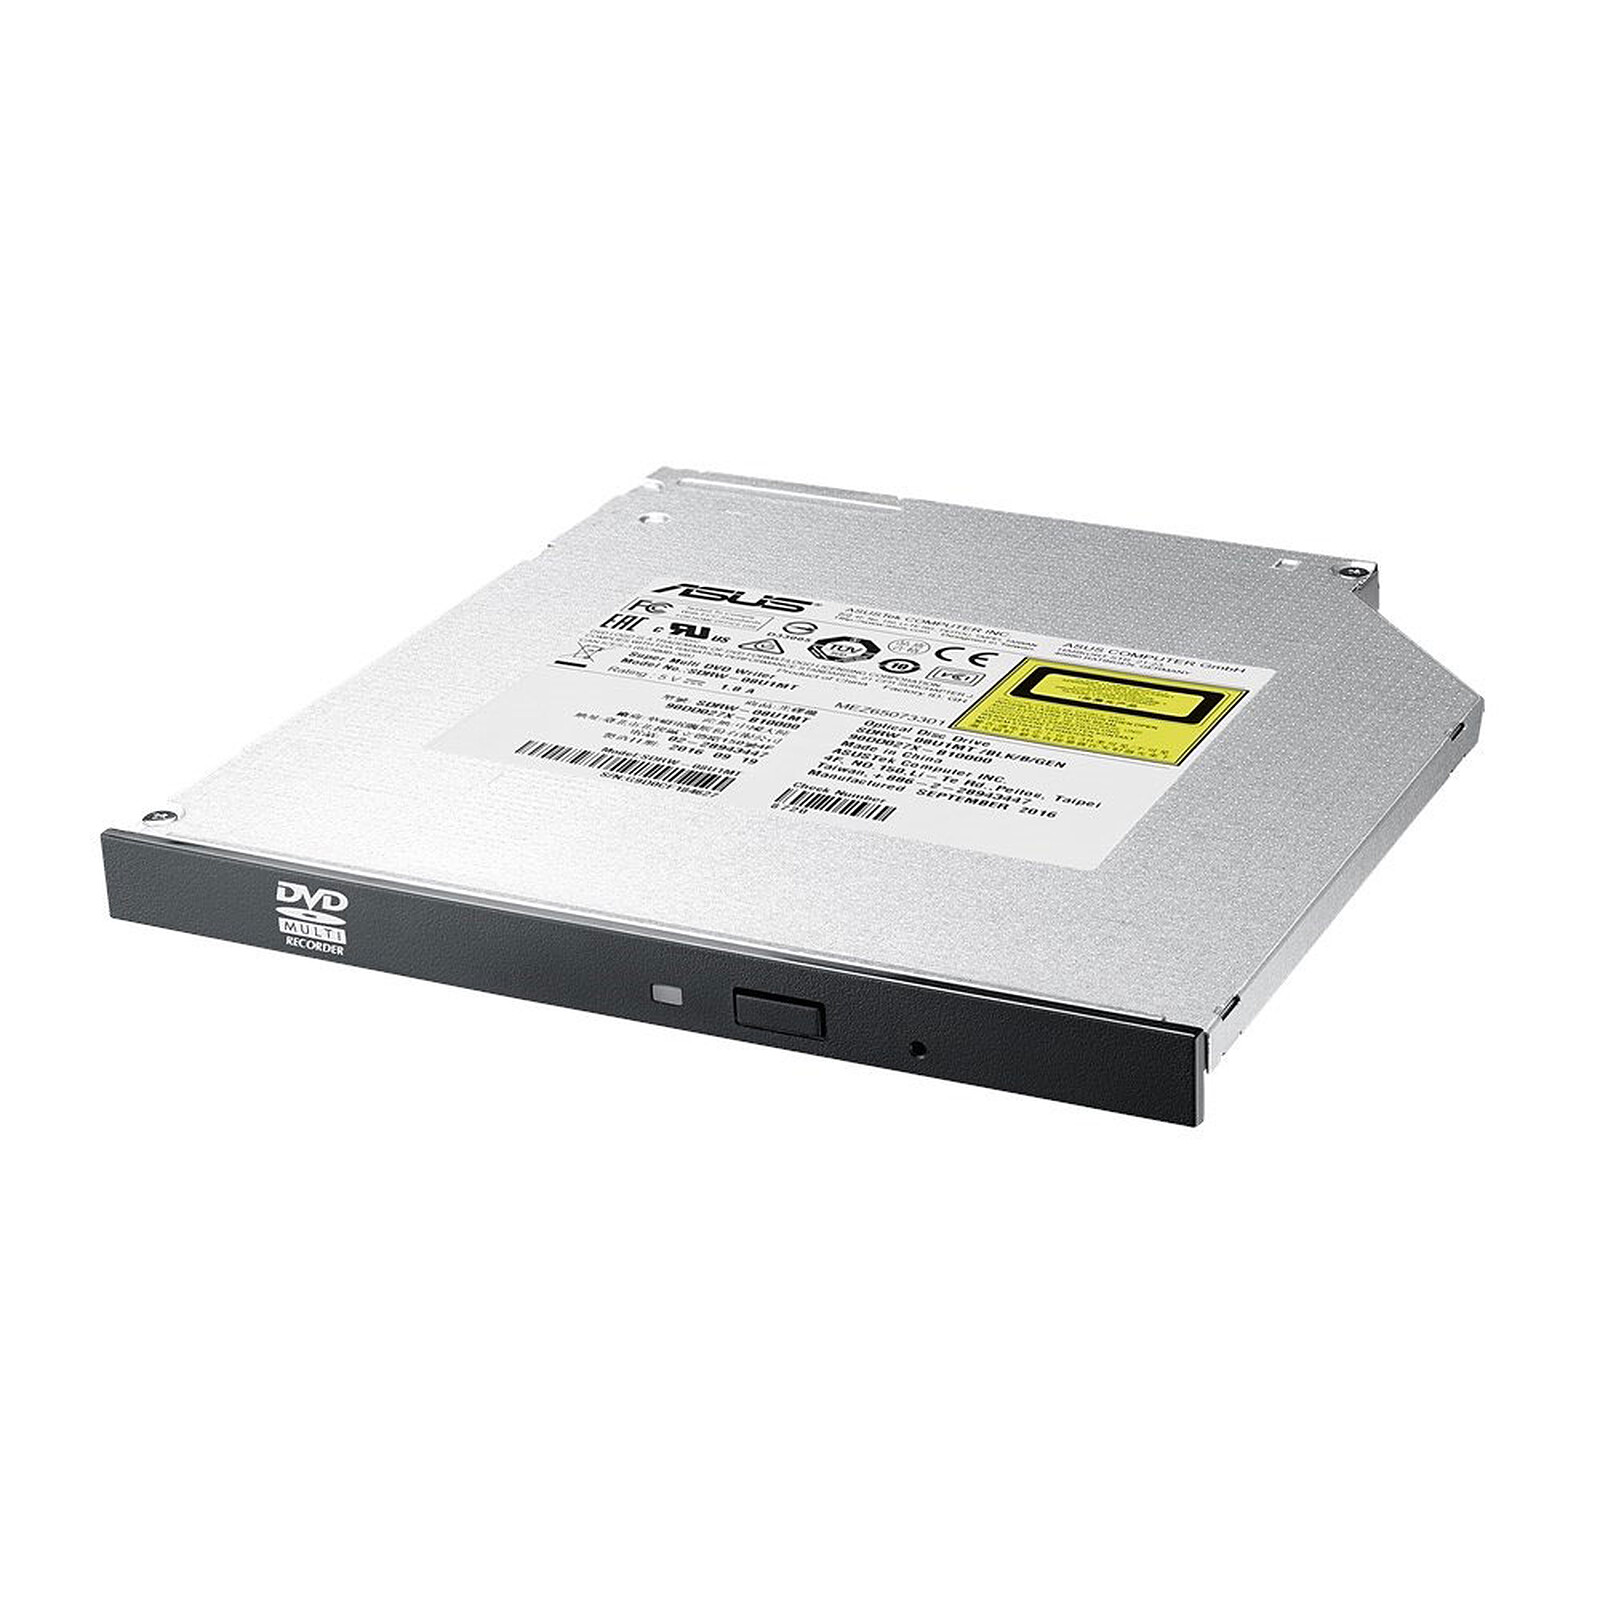 Grabador de DVD con disco duro Panasonic EX77, análisis